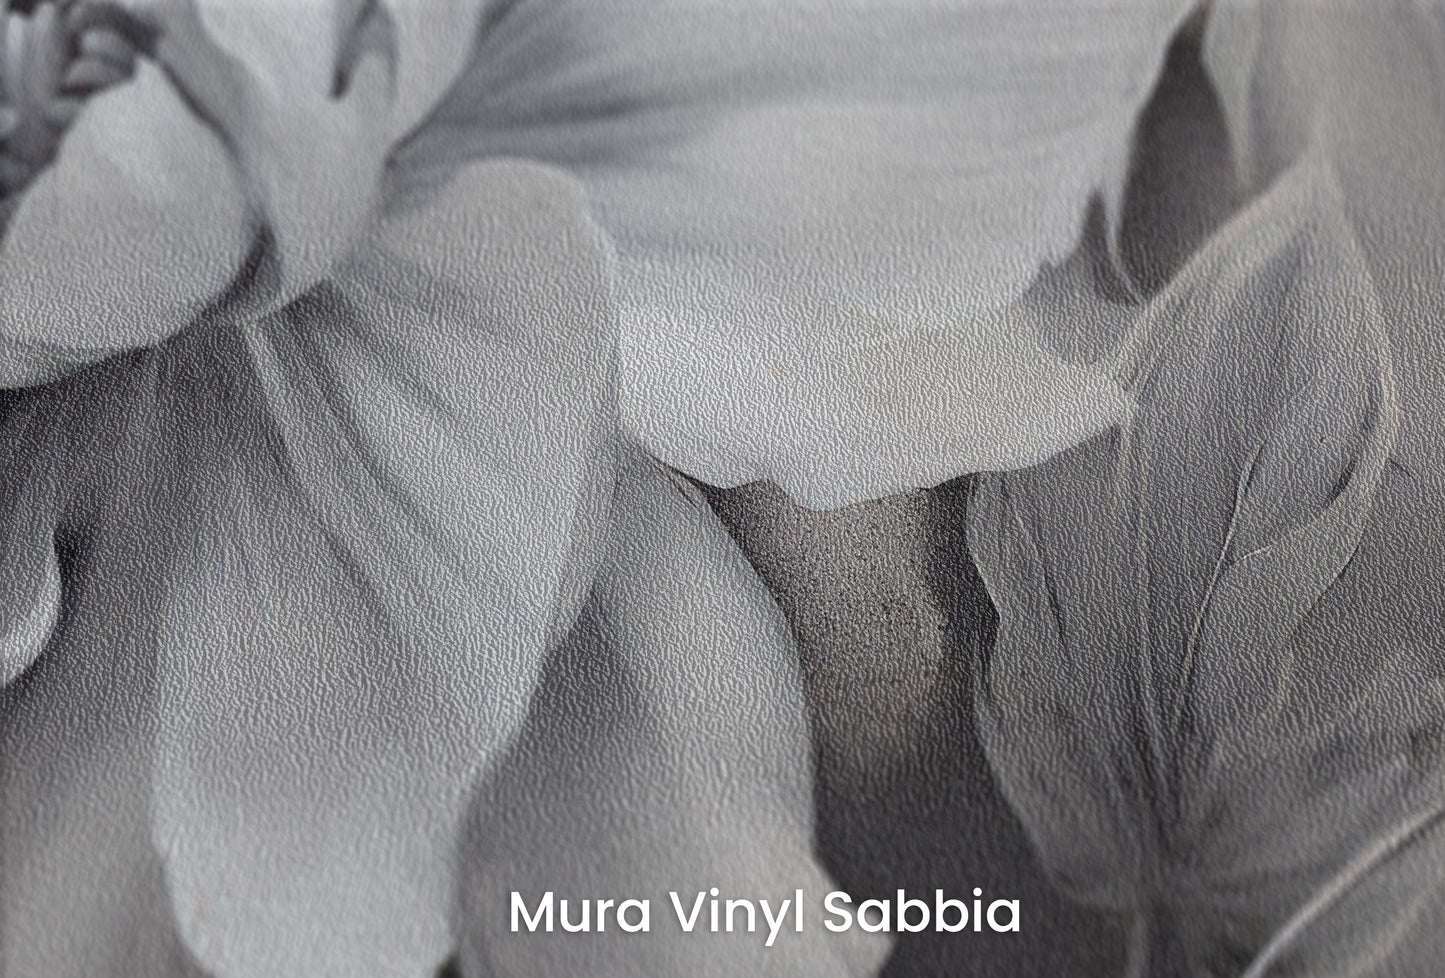 Zbliżenie na artystyczną fototapetę o nazwie NOCTURNAL FLORAL WHISPERS na podłożu Mura Vinyl Sabbia struktura grubego ziarna piasku.